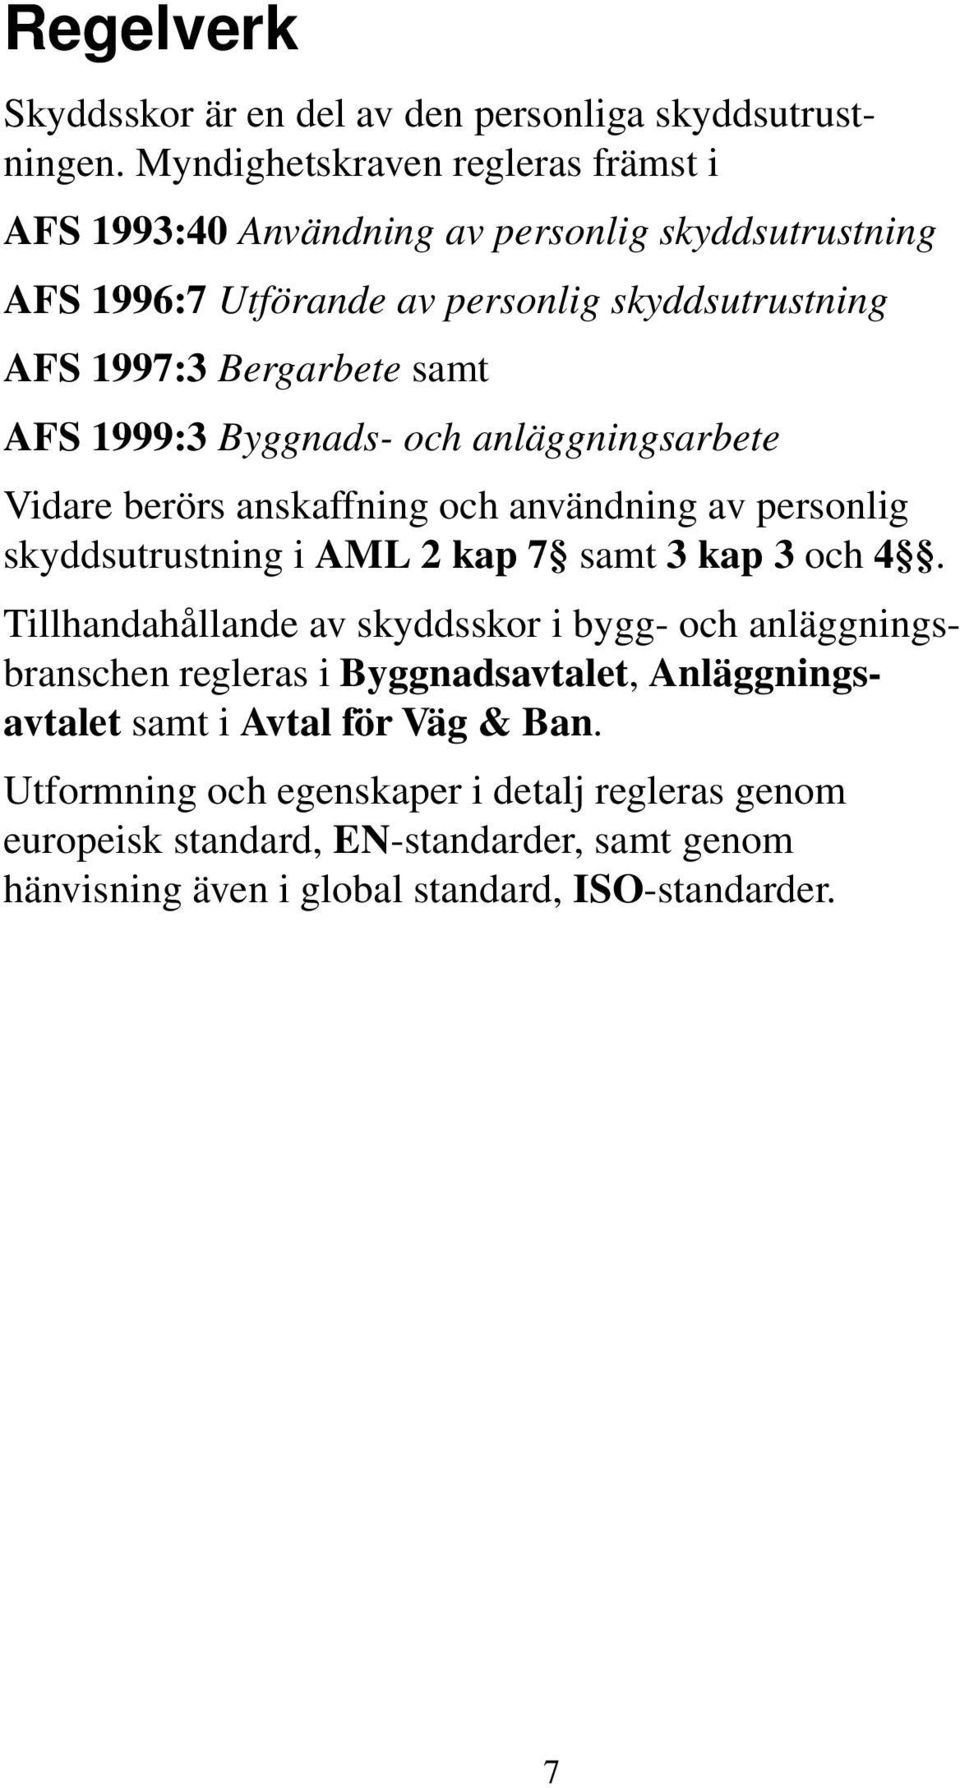 AFS 1999:3 Byggnads- och anläggningsarbete Vidare berörs anskaffning och användning av personlig skyddsutrustning i AML 2 kap 7 samt 3 kap 3 och 4.